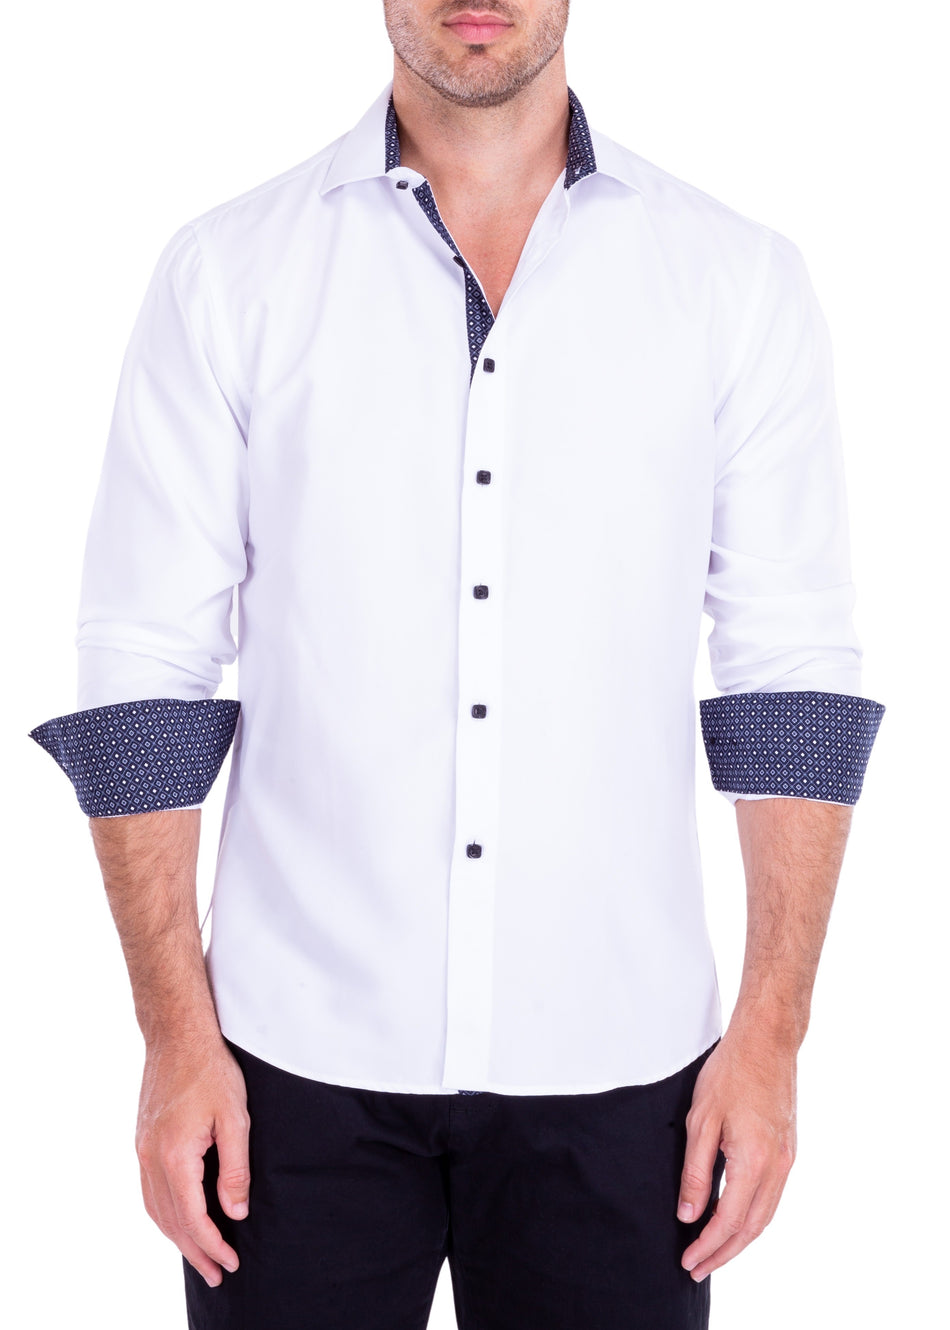 192318 - White Button Up Long Sleeve Dress Shirt